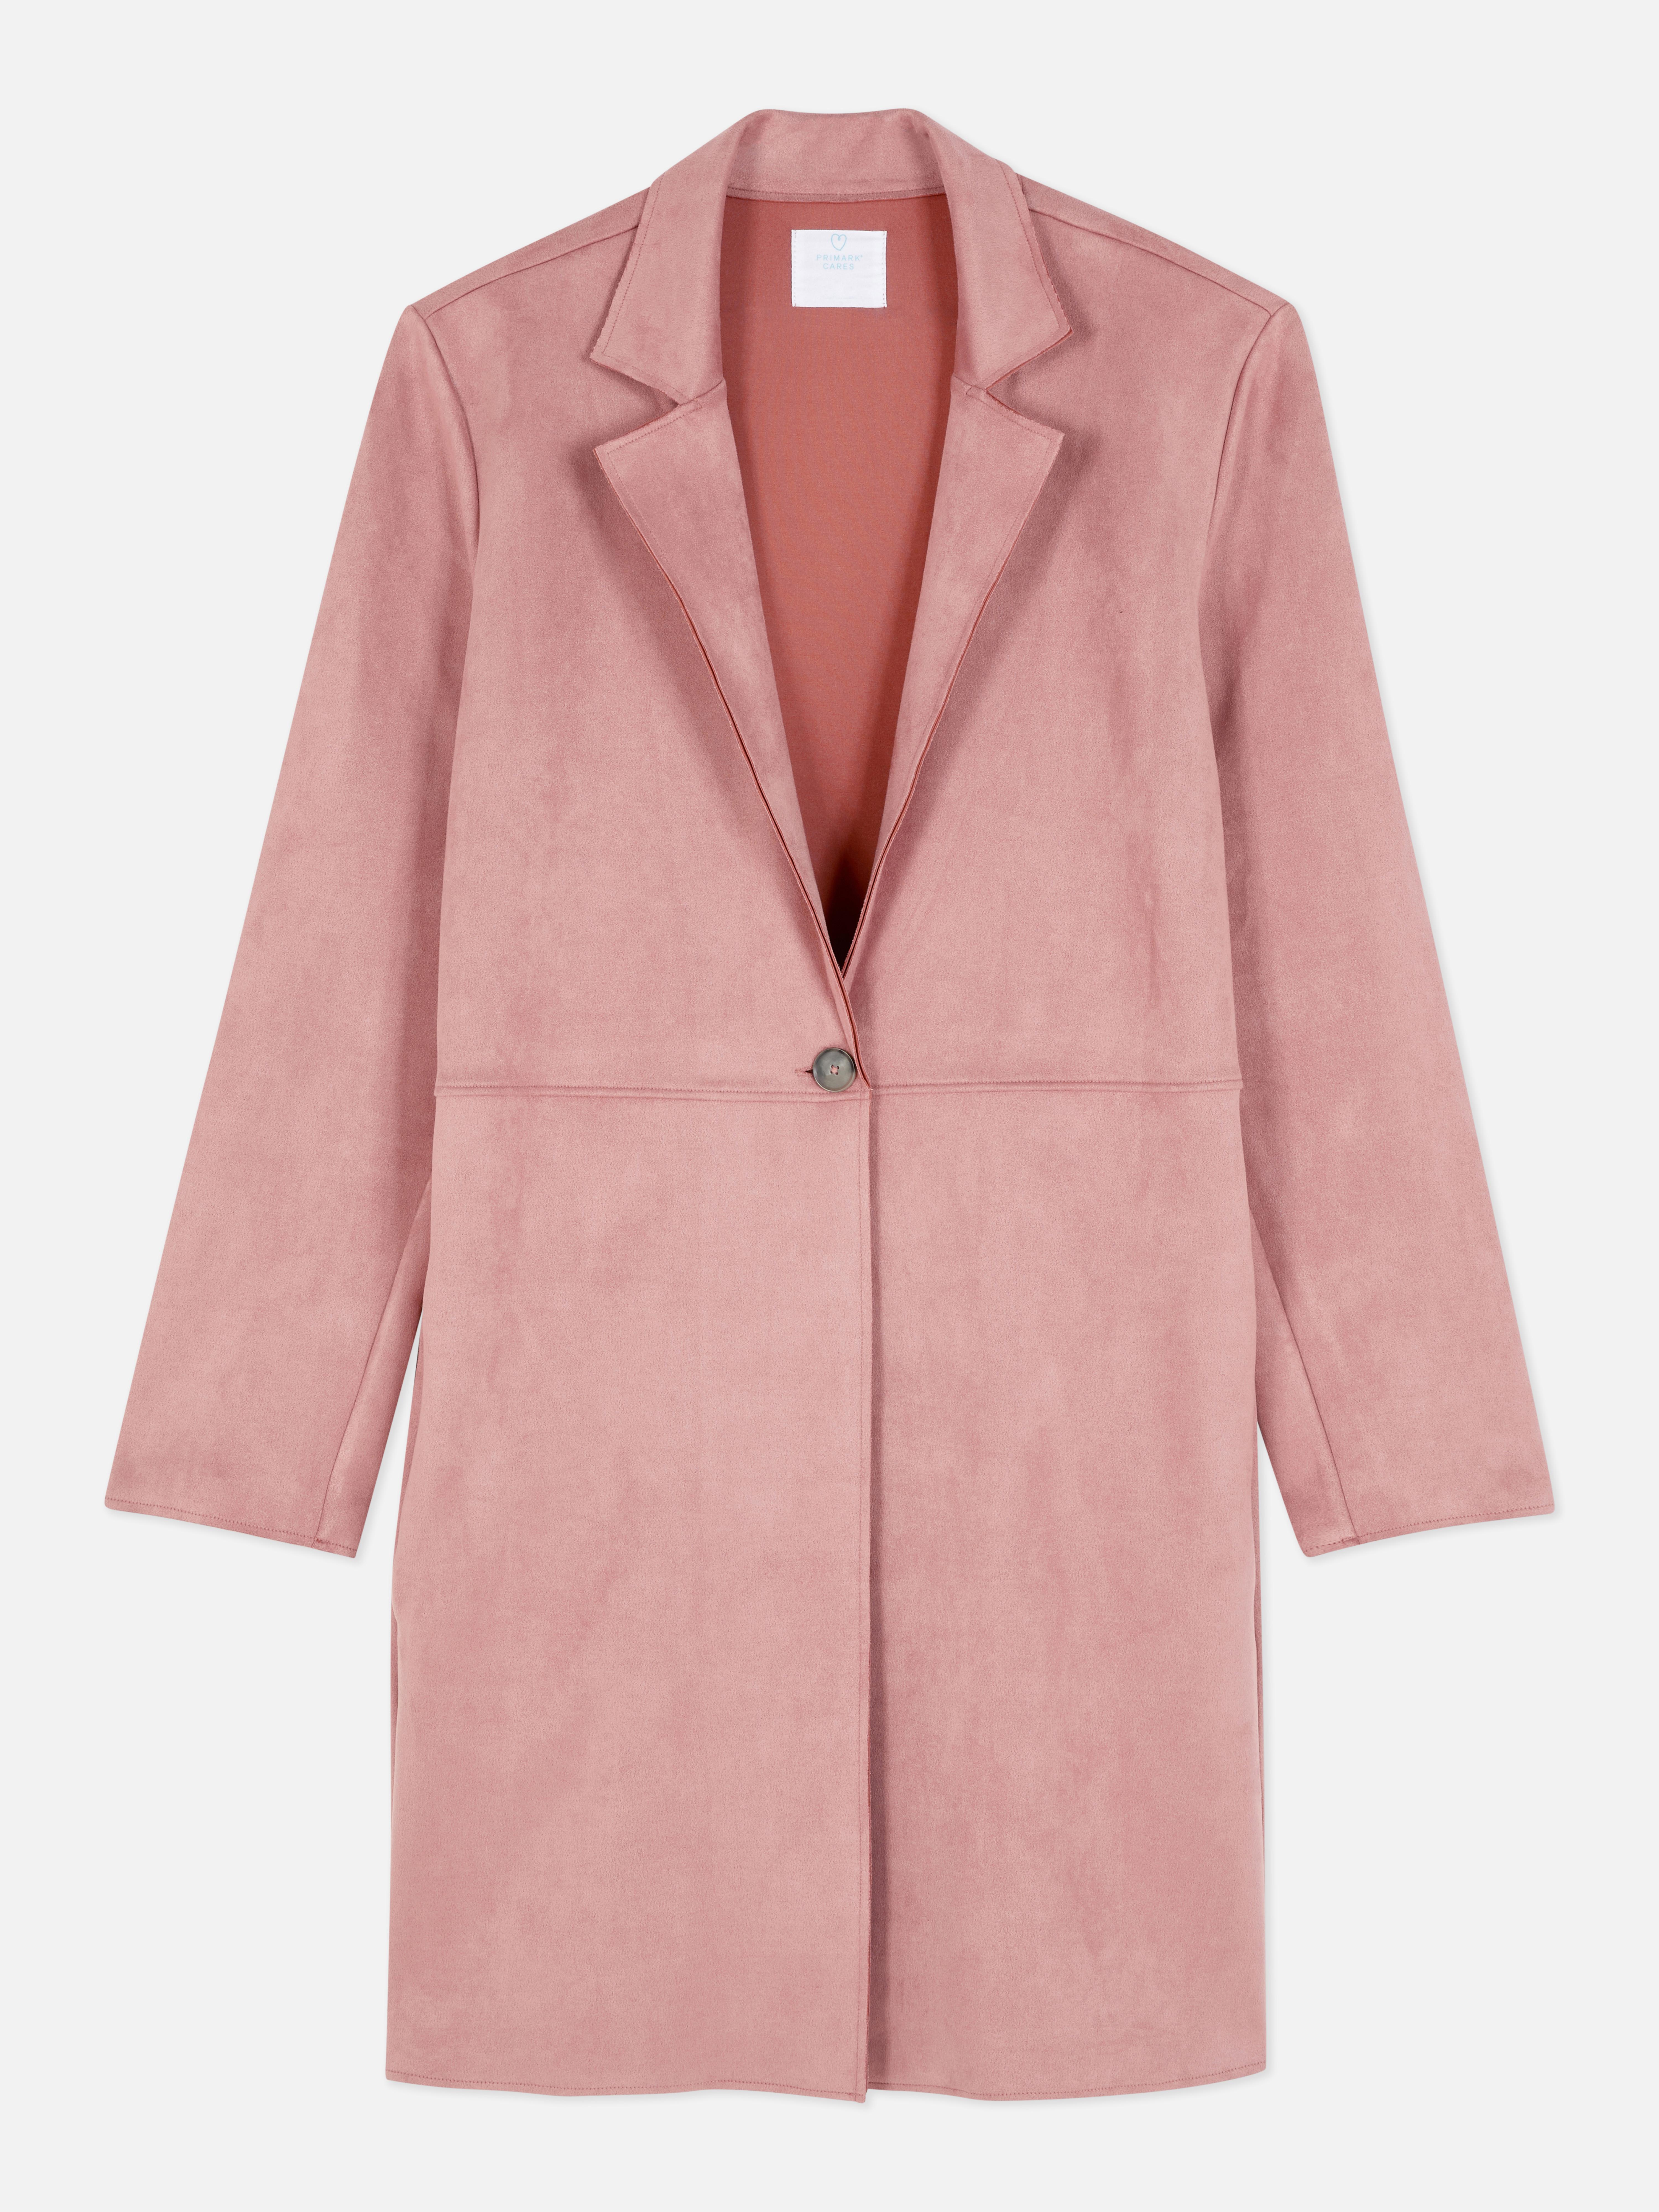 Abrigo de antelina | Abrigos y chaquetas para mujer | Ropa mujer Nuestra línea de moda femenina | Todos los productos Primark | España